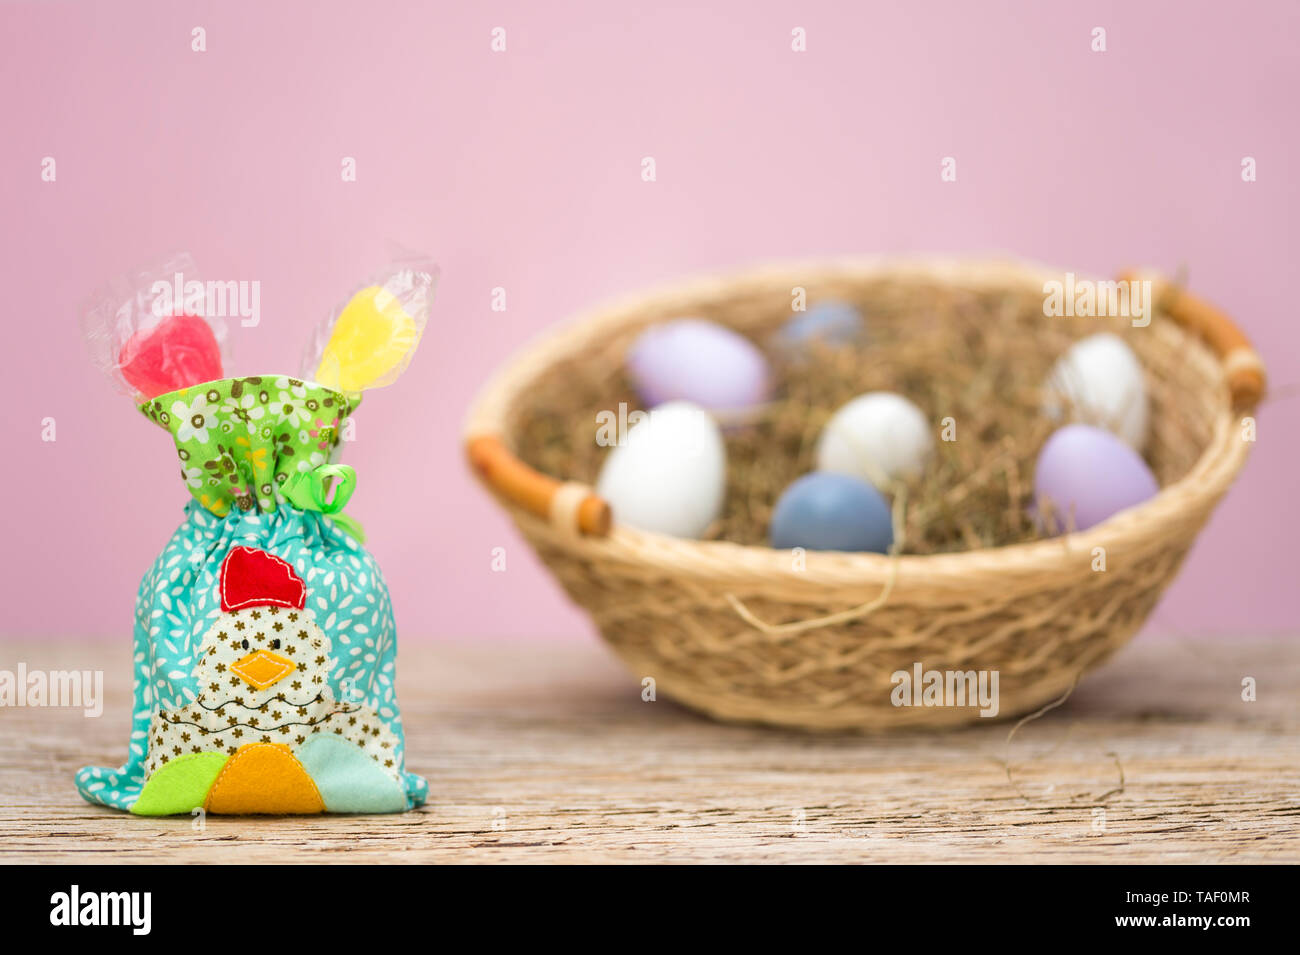 Eine kleine Tüte mit Süßigkeiten gefüllt. Ein Huhn angewandt wurde. Dieses patchwork steht vor einem Nest mit Ostereiern. Rosa Hintergrund mit kopieren. Stockfoto